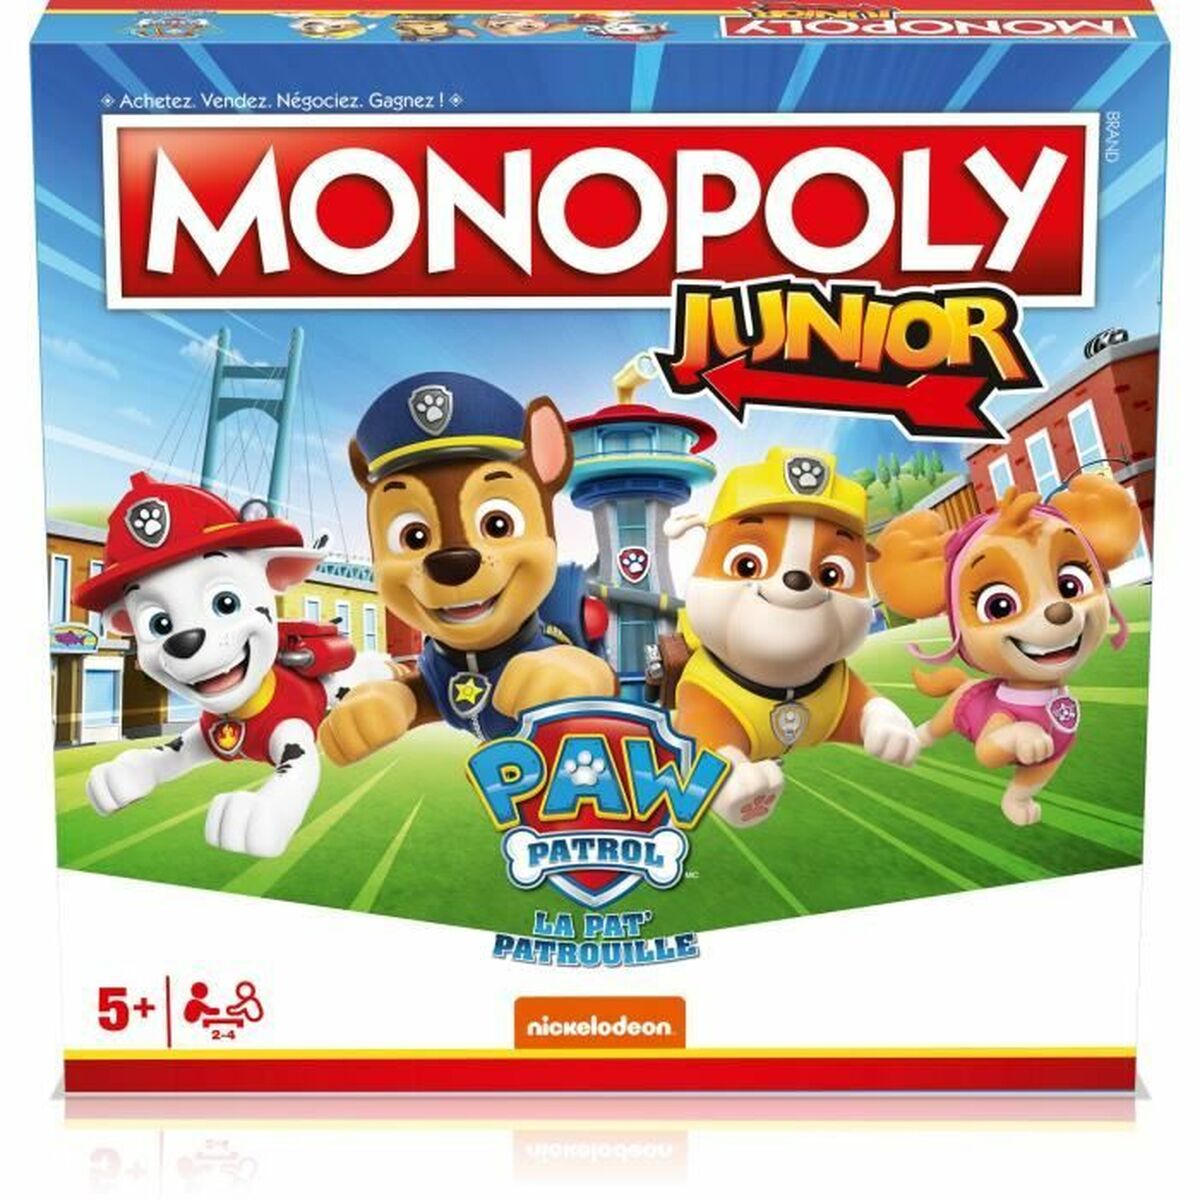 Osta tuote Lautapeli Monopoly Winning Moves Paw Patrol verkkokaupastamme Korhone: Lelut & Asut 10% alennuksella koodilla KORHONE